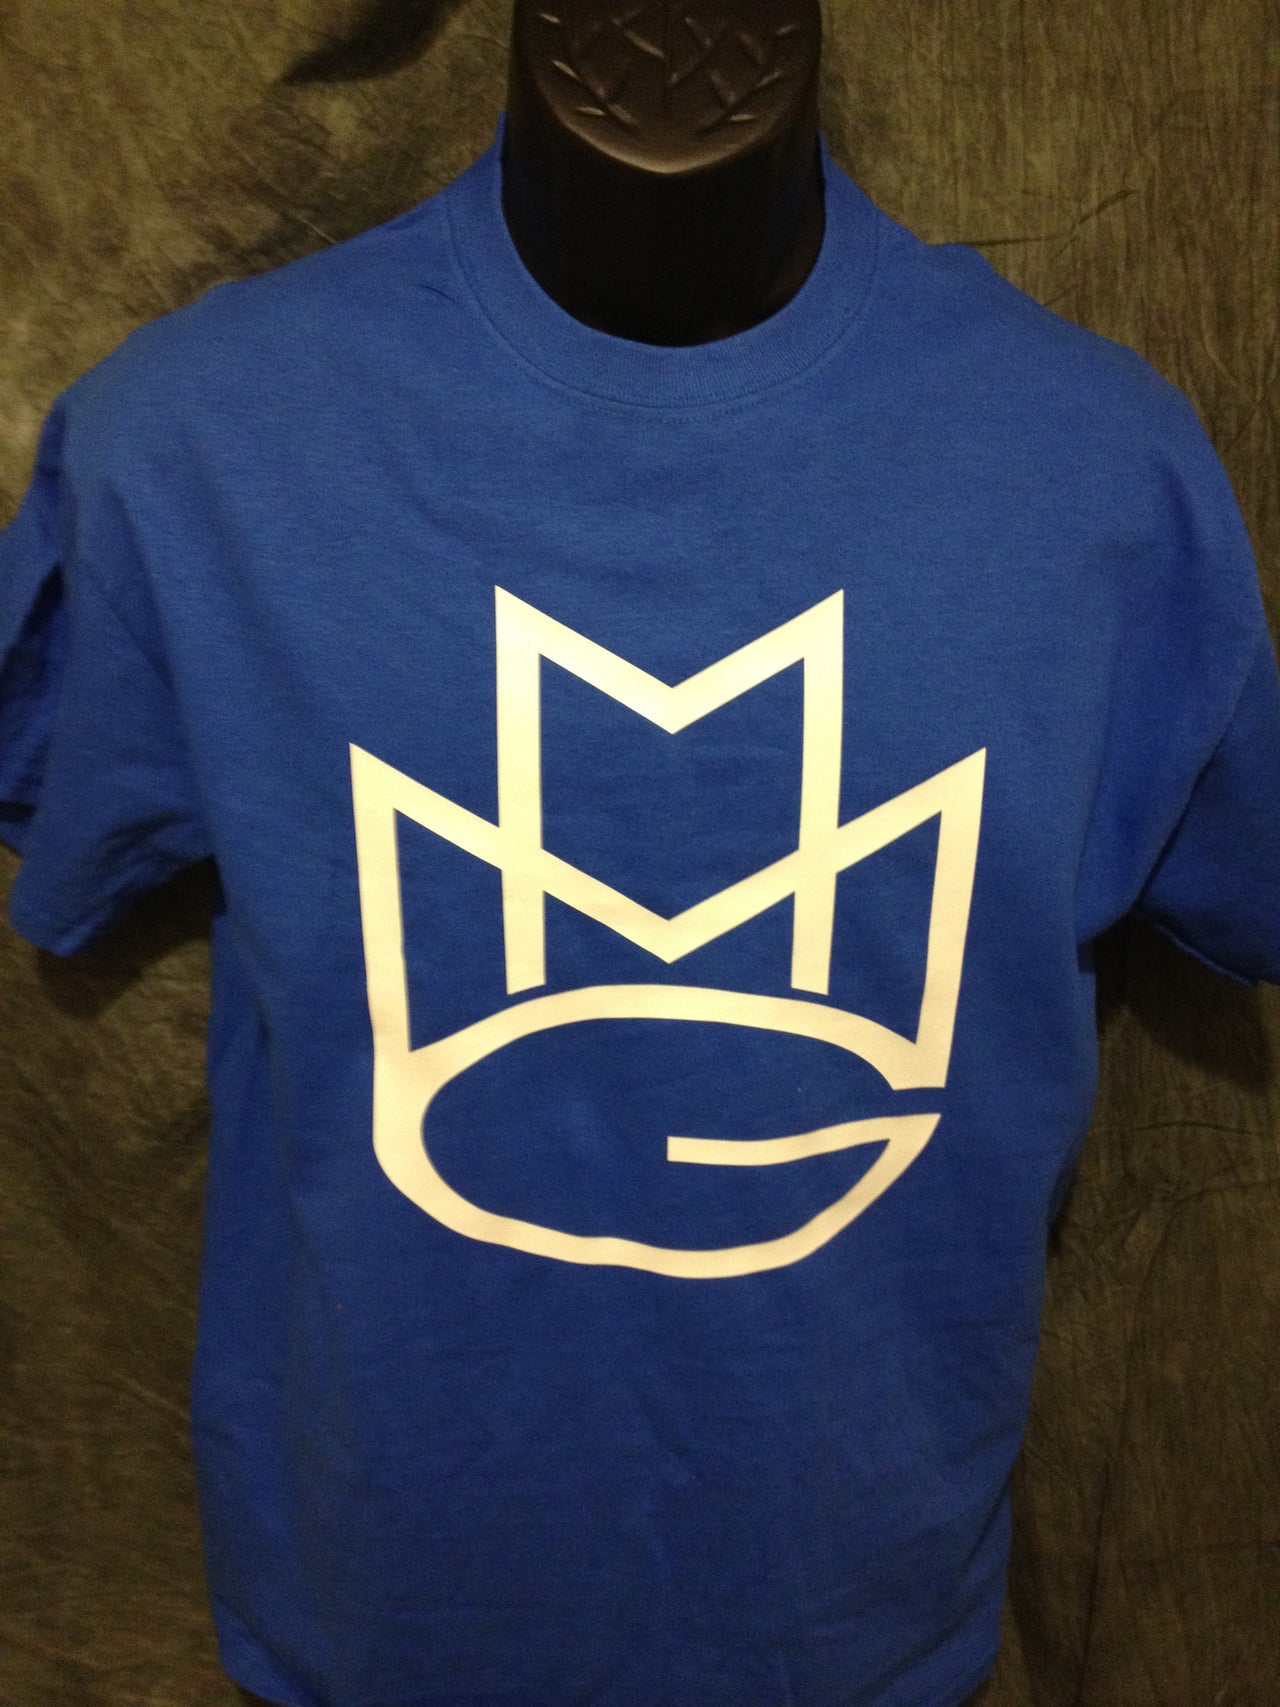 Maybach Music Group Tshirt: Blue with White Print - TshirtNow.net - 3